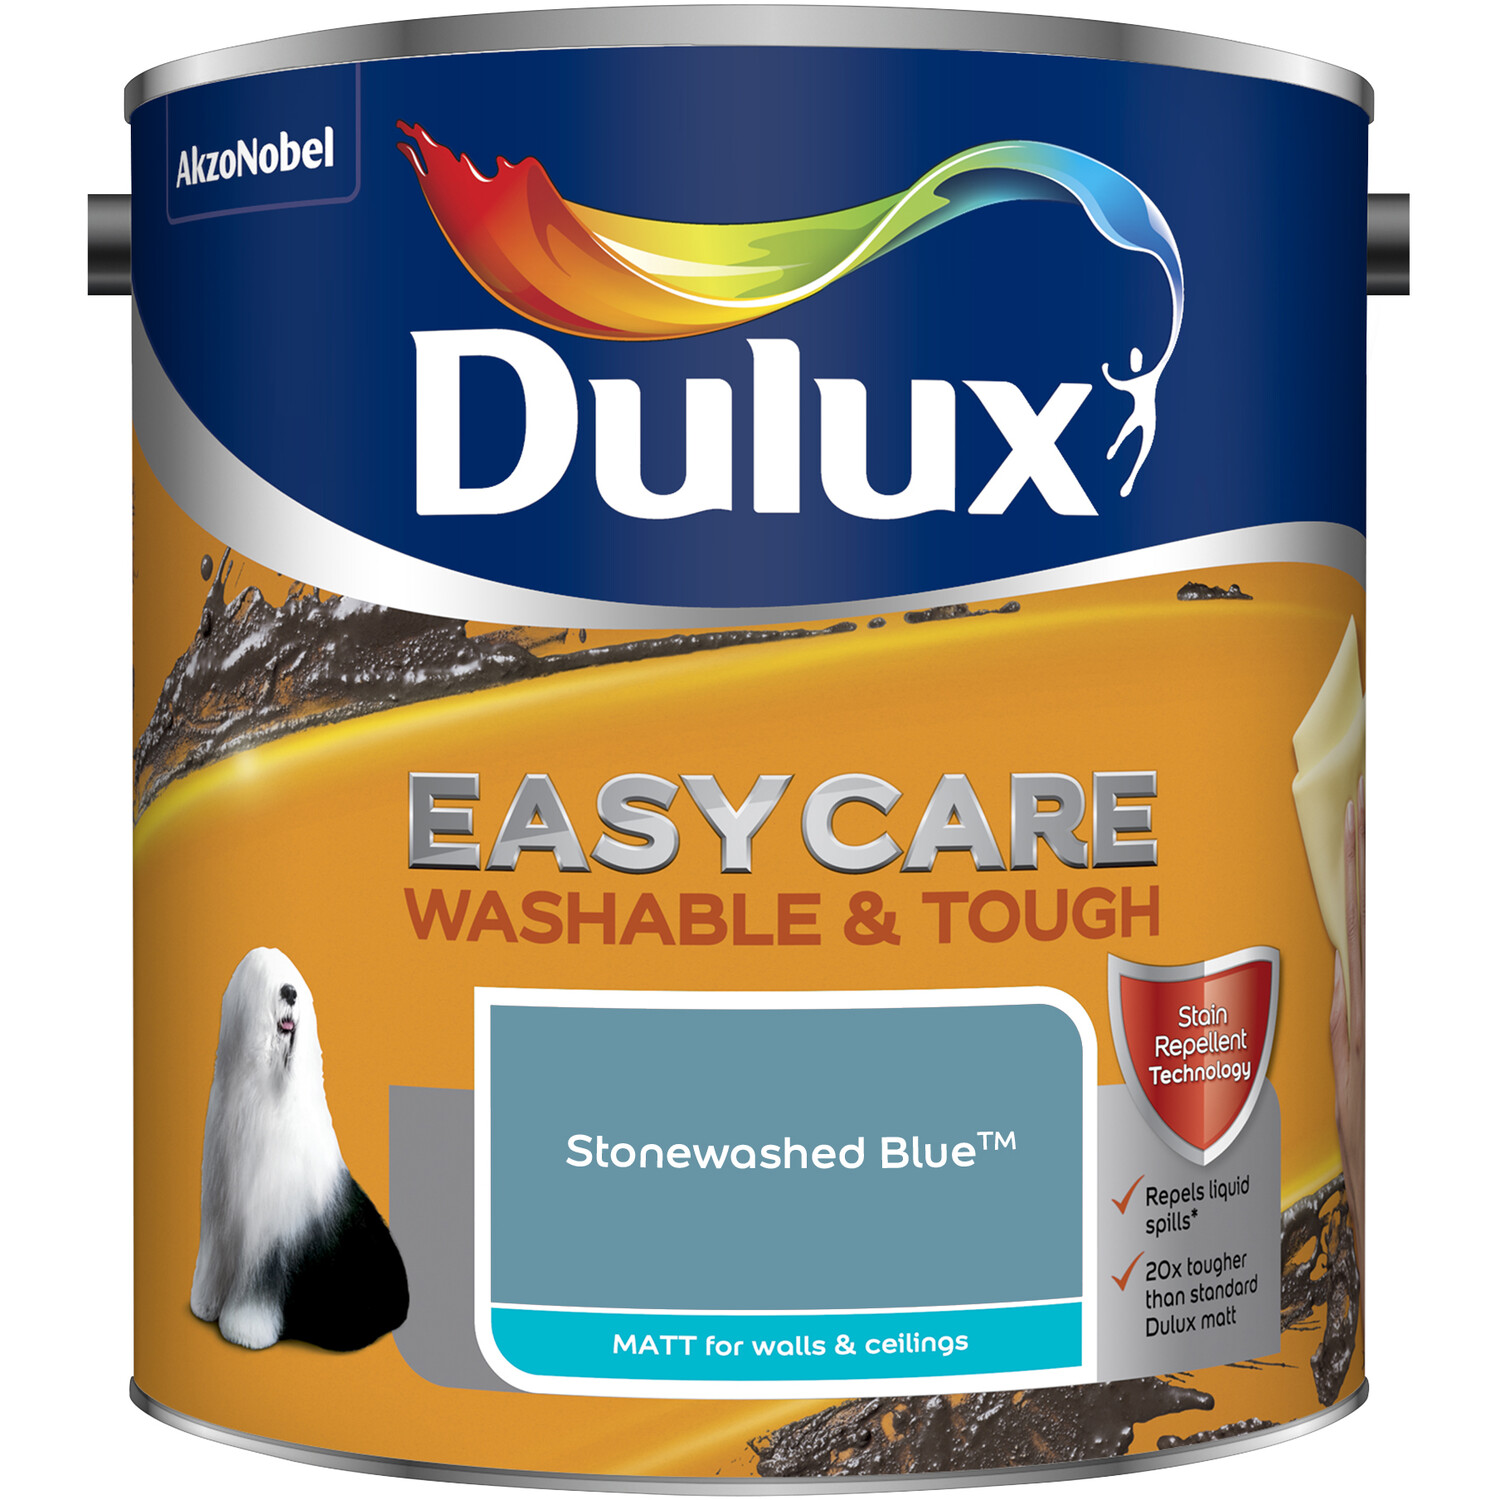 Dulux Easycare Washable & Tough Stonewashed Blue Matt Paint 2.5L Image 2